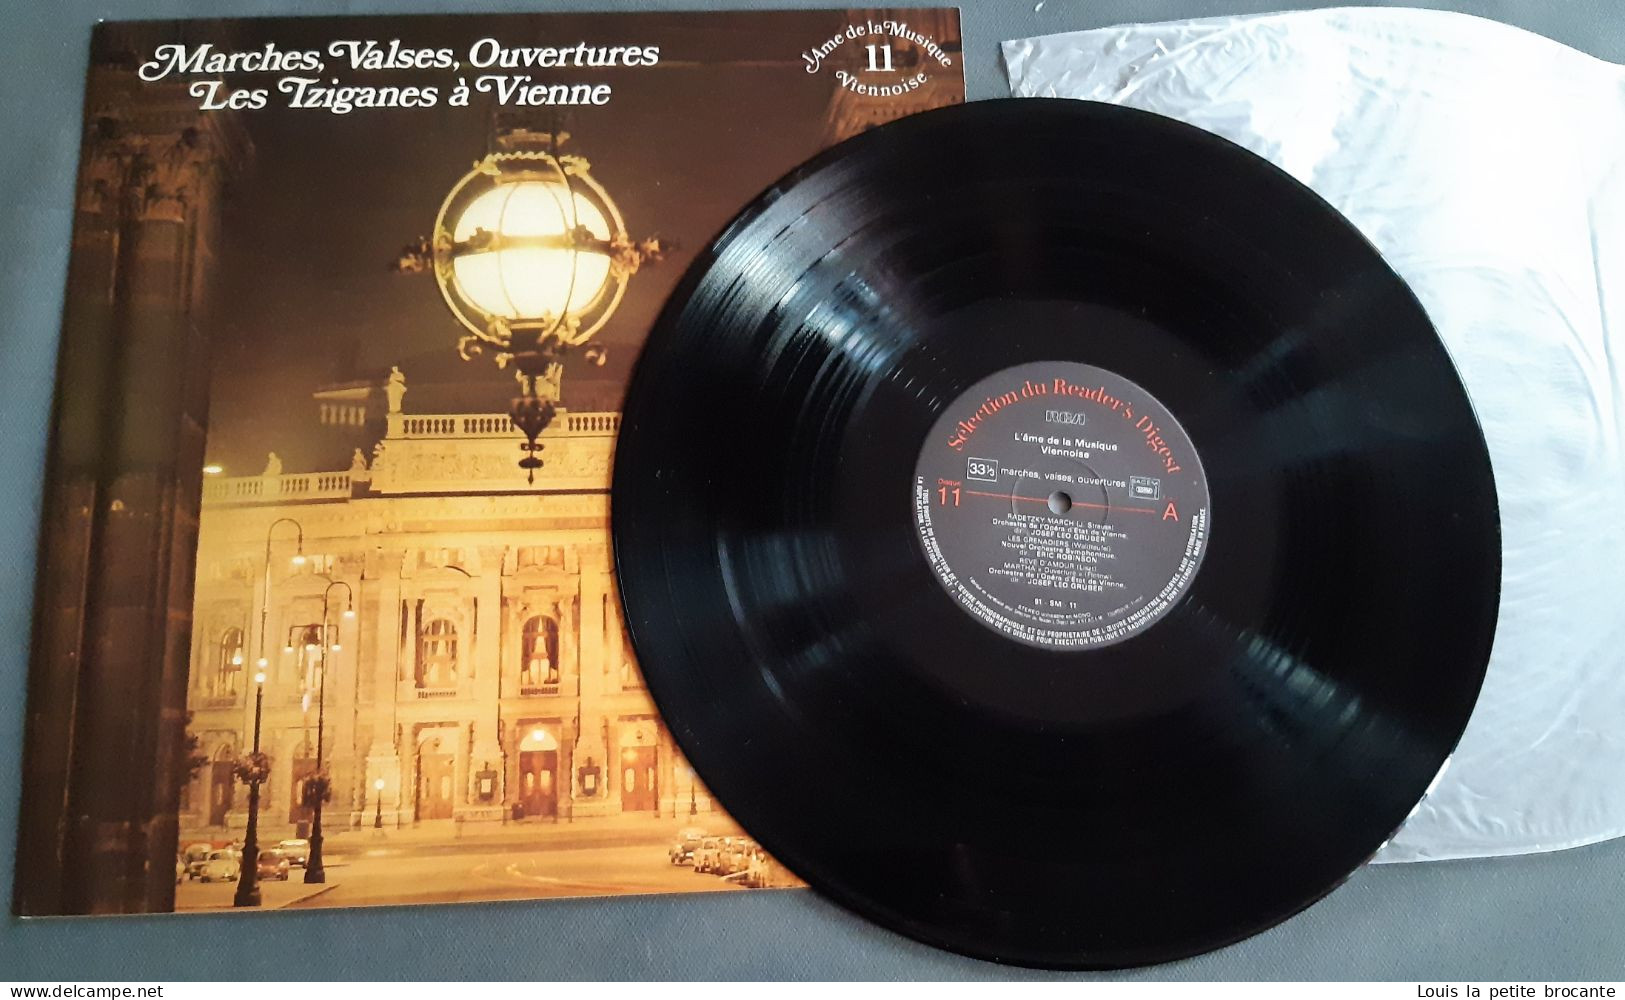 Coffret de 12 disques vinyles "L'Ame de la Musique Viennoise", 33 tours stéréo. RCA, Sélection du Reader's Digest 1978.